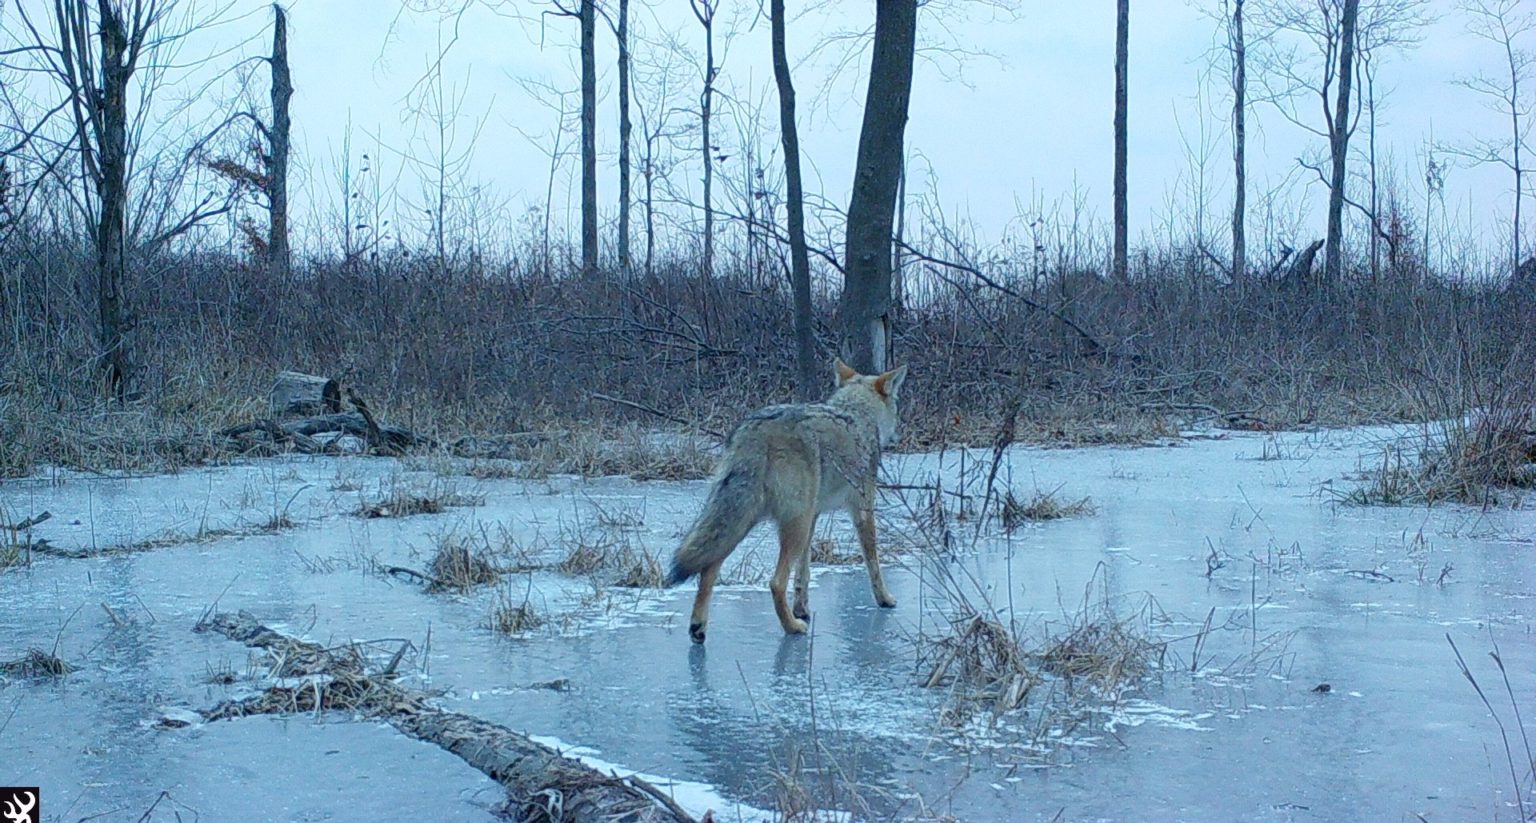 Coyote walks across frozen ground